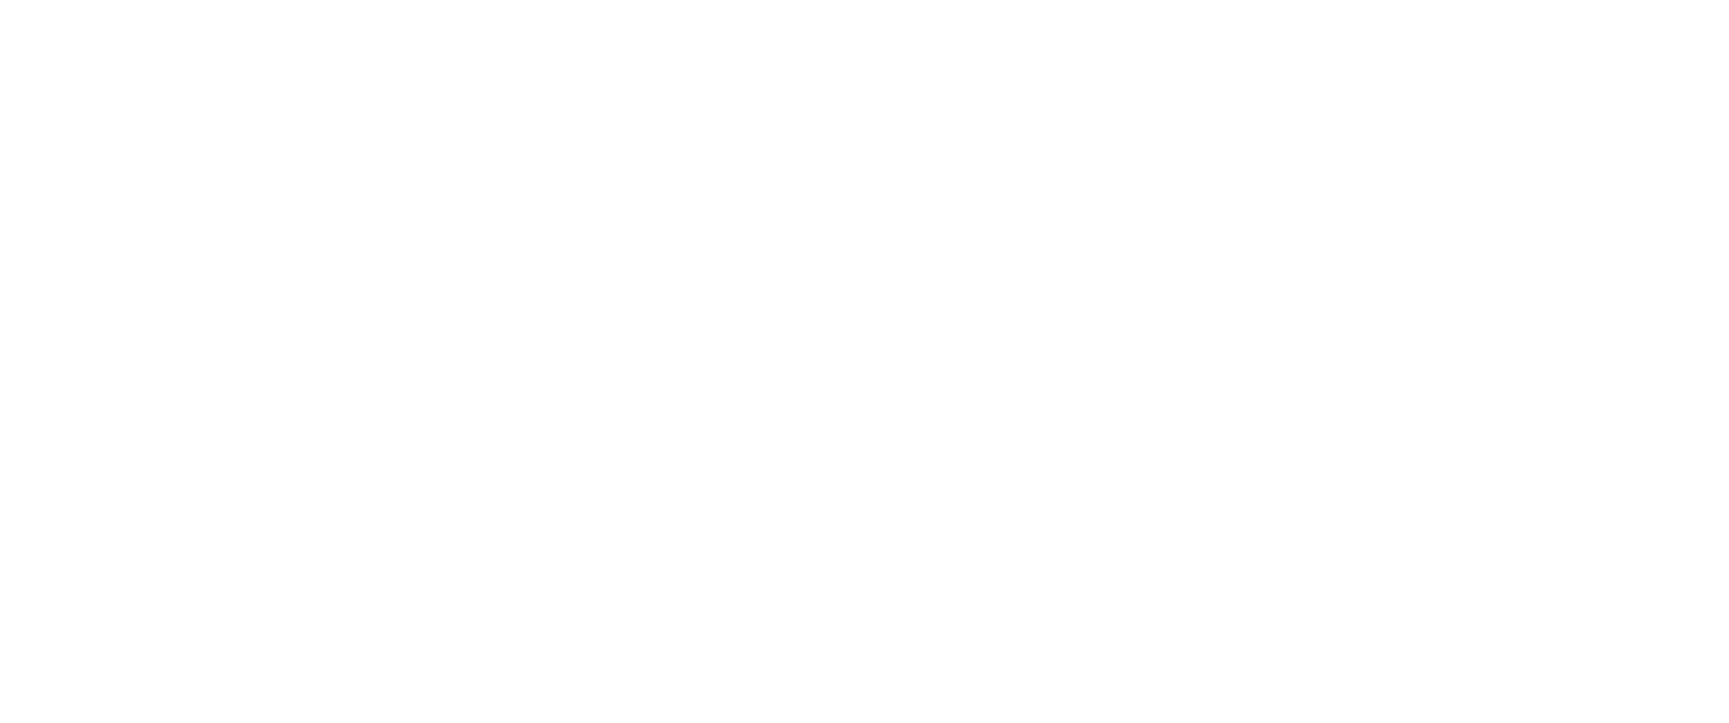 Logo Corporation des maîtres électriciens du Québec